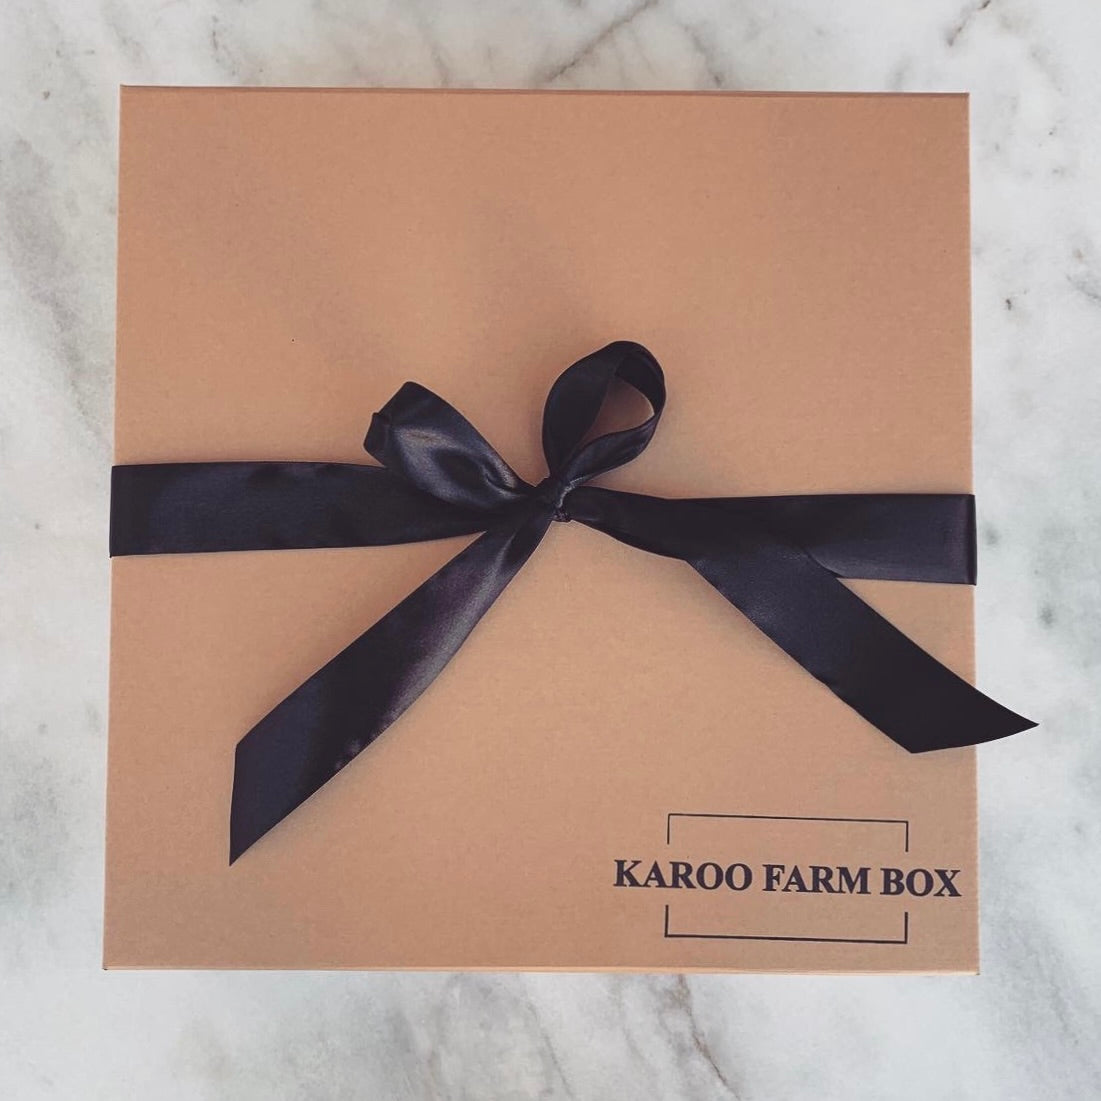 Build-Your-Own Karoo Farm Box